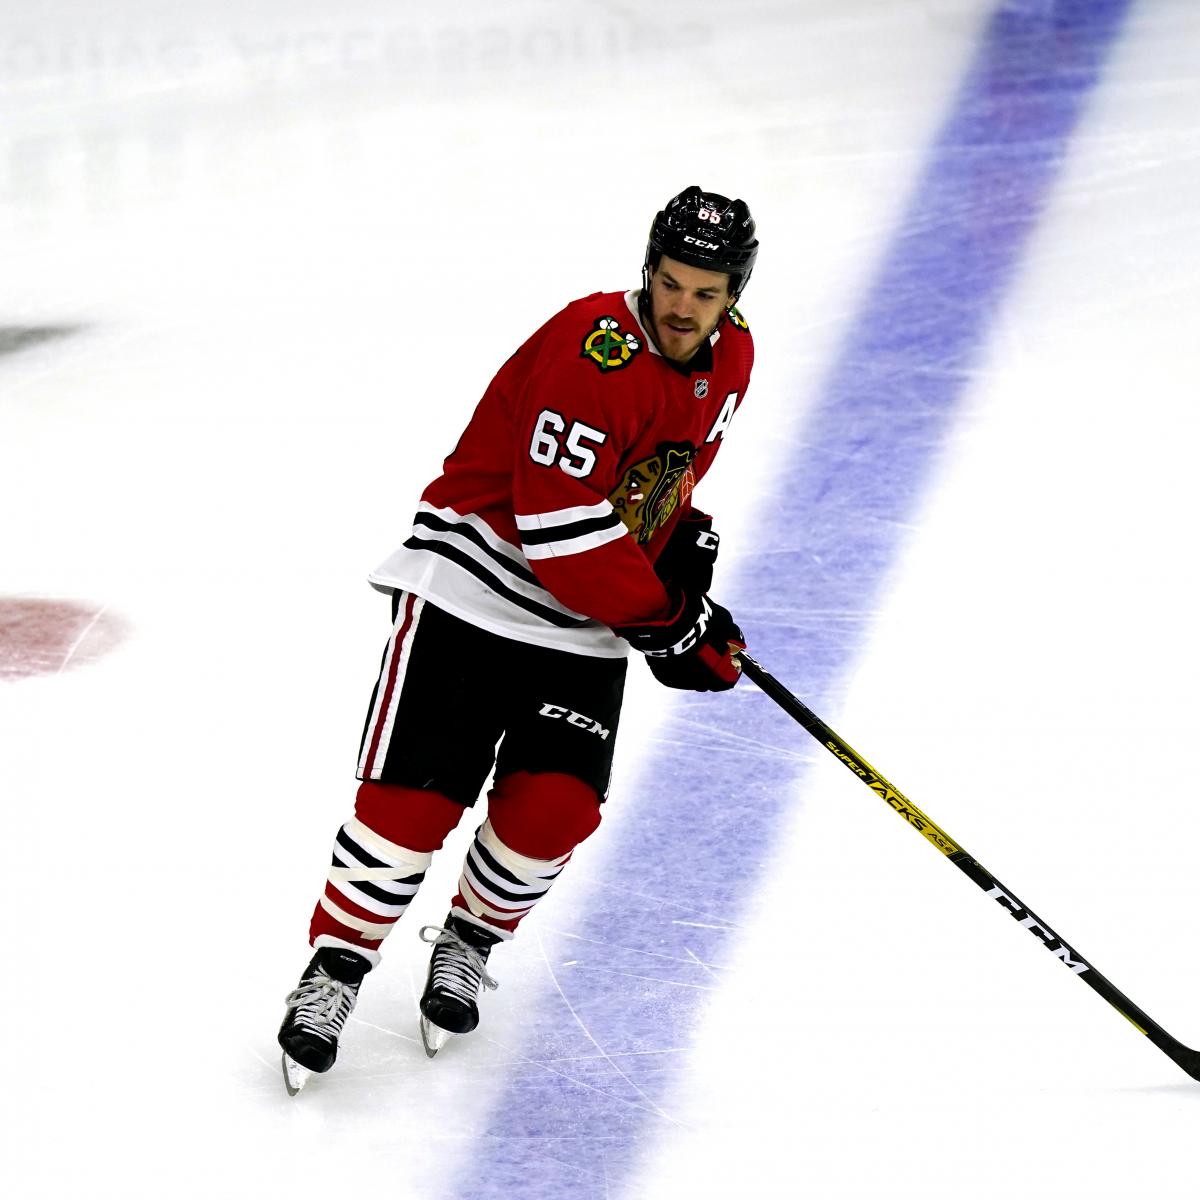 Andrew Shaw (ice hockey) - Wikipedia